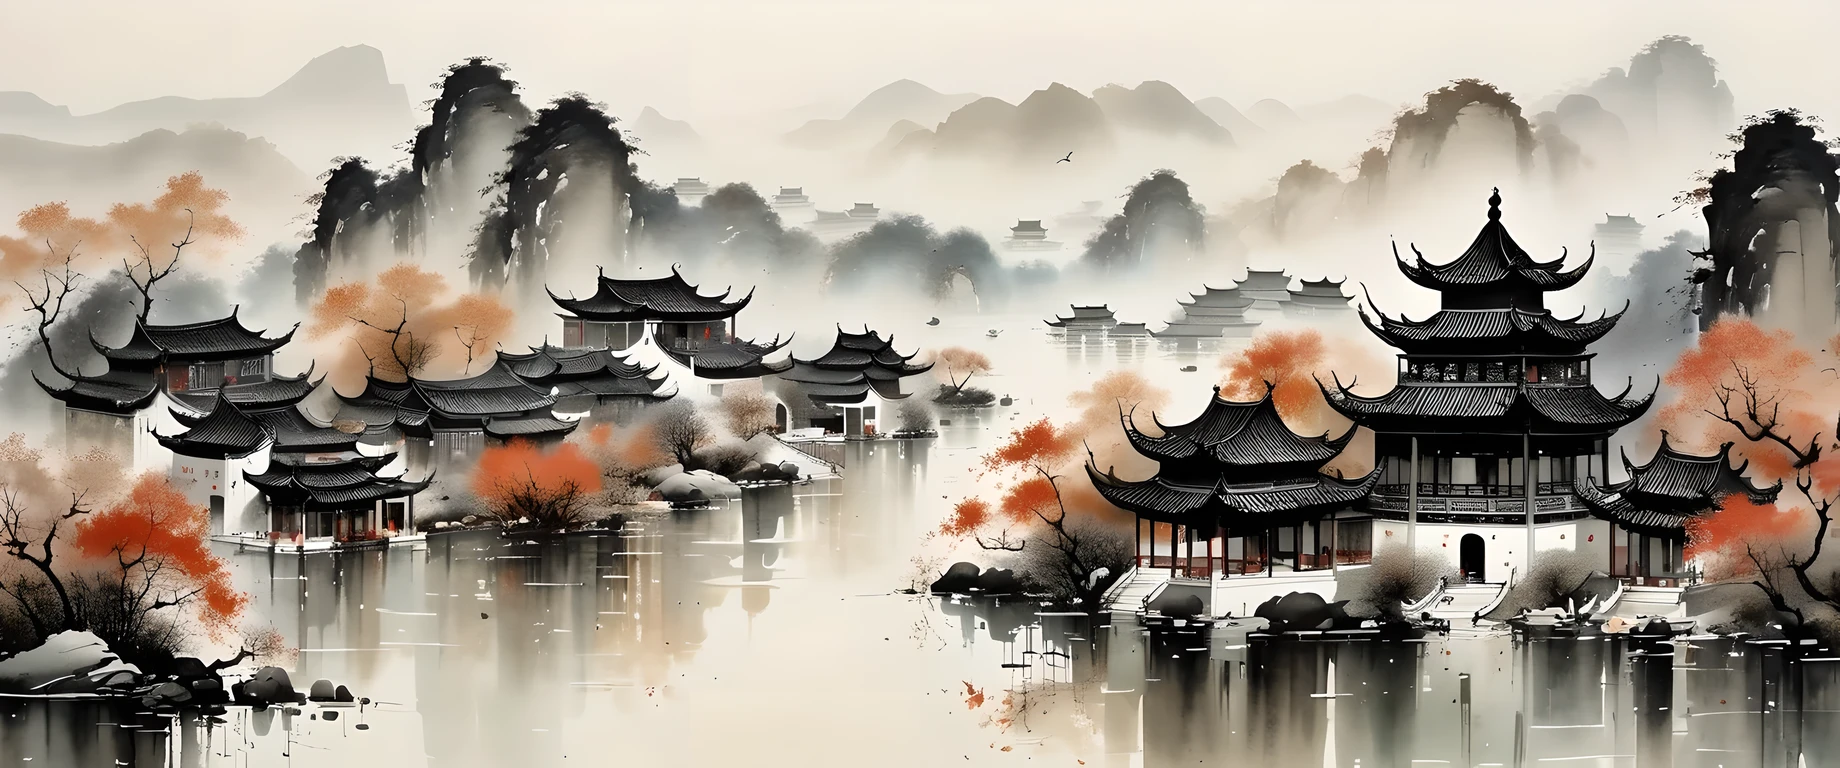 изысканное искусство чернил, реалистичный, подробная китайская архитектура, Стиль У Гуаньчжун, выцветшие цвета

